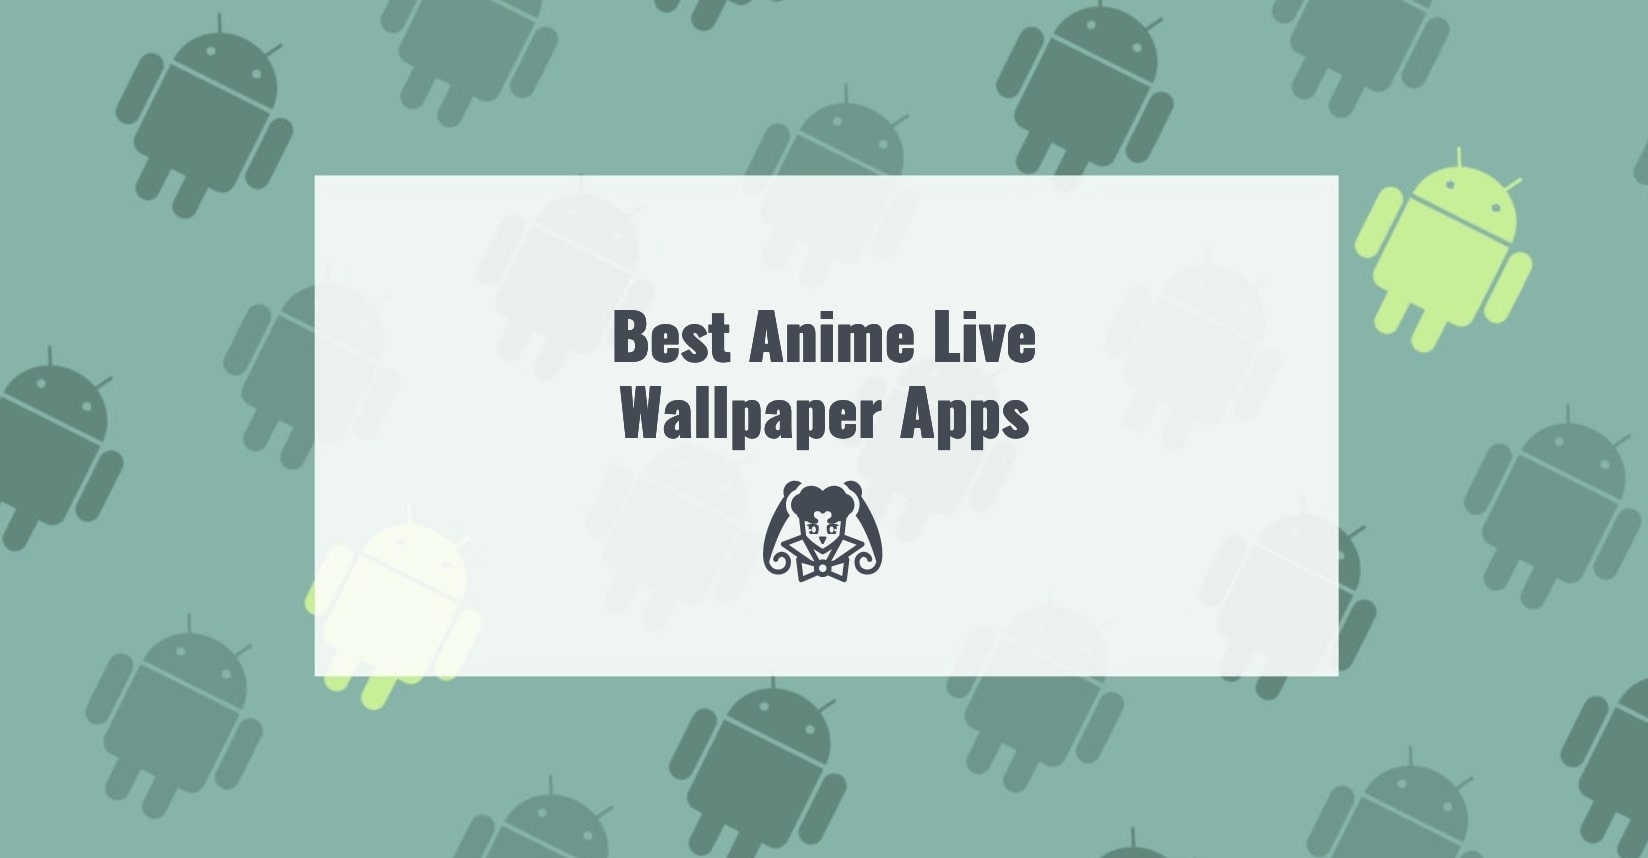 Best Anime Live Wallpaper Apps